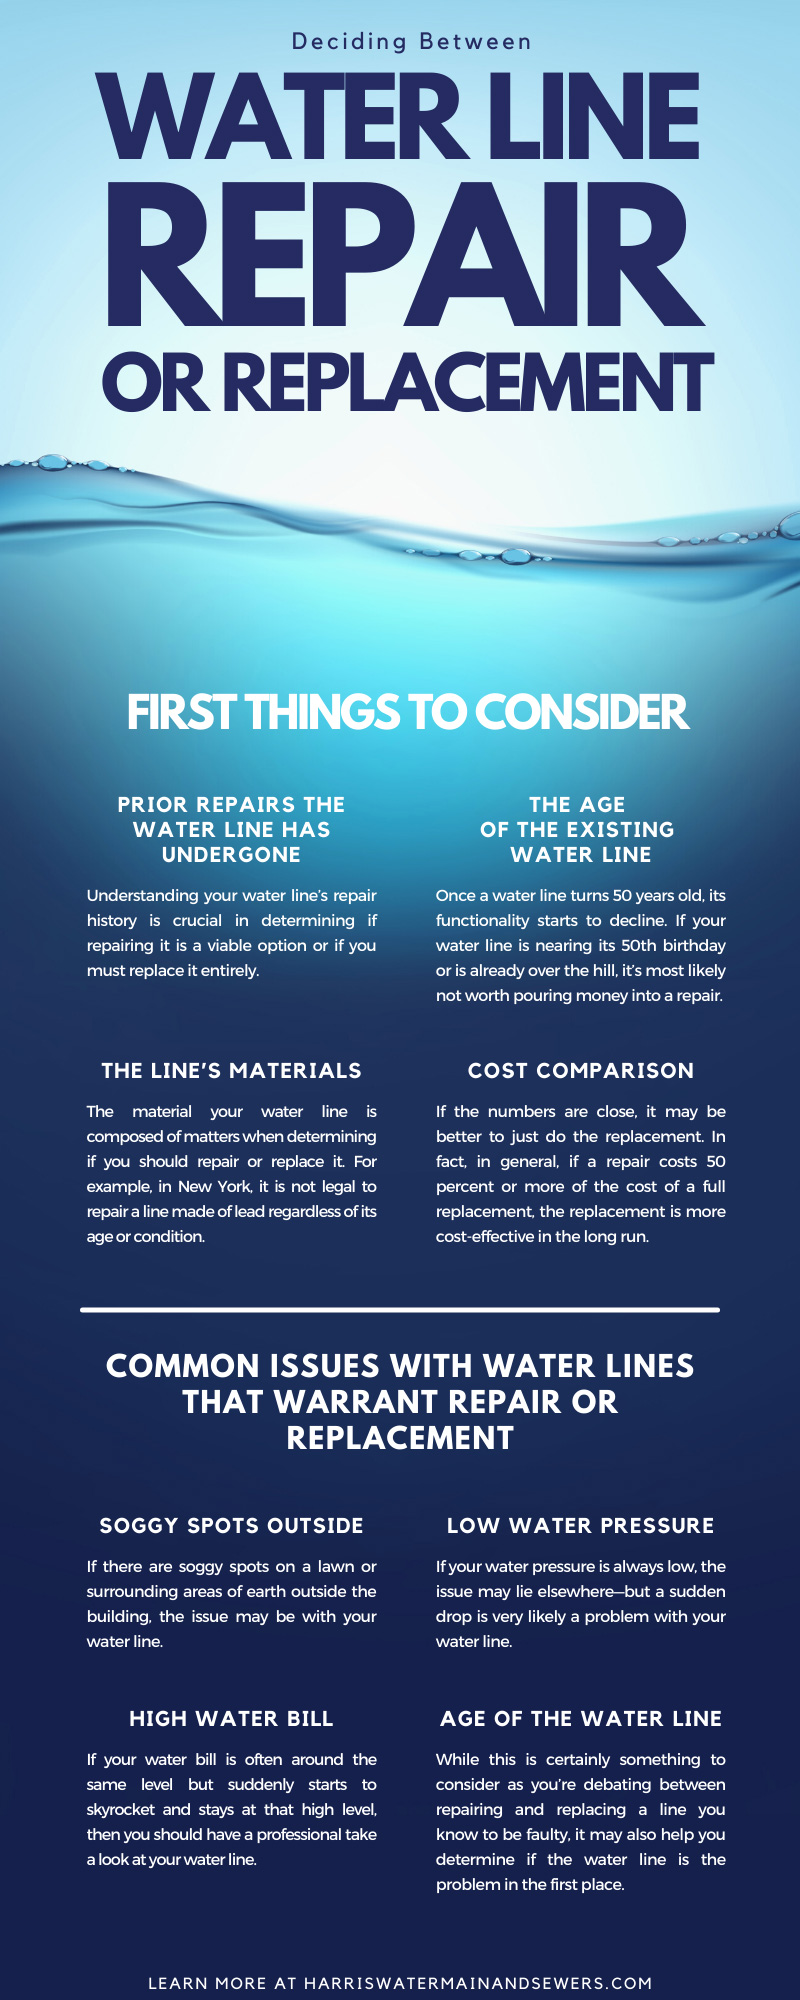 Deciding Between Water Line Repair or Replacement